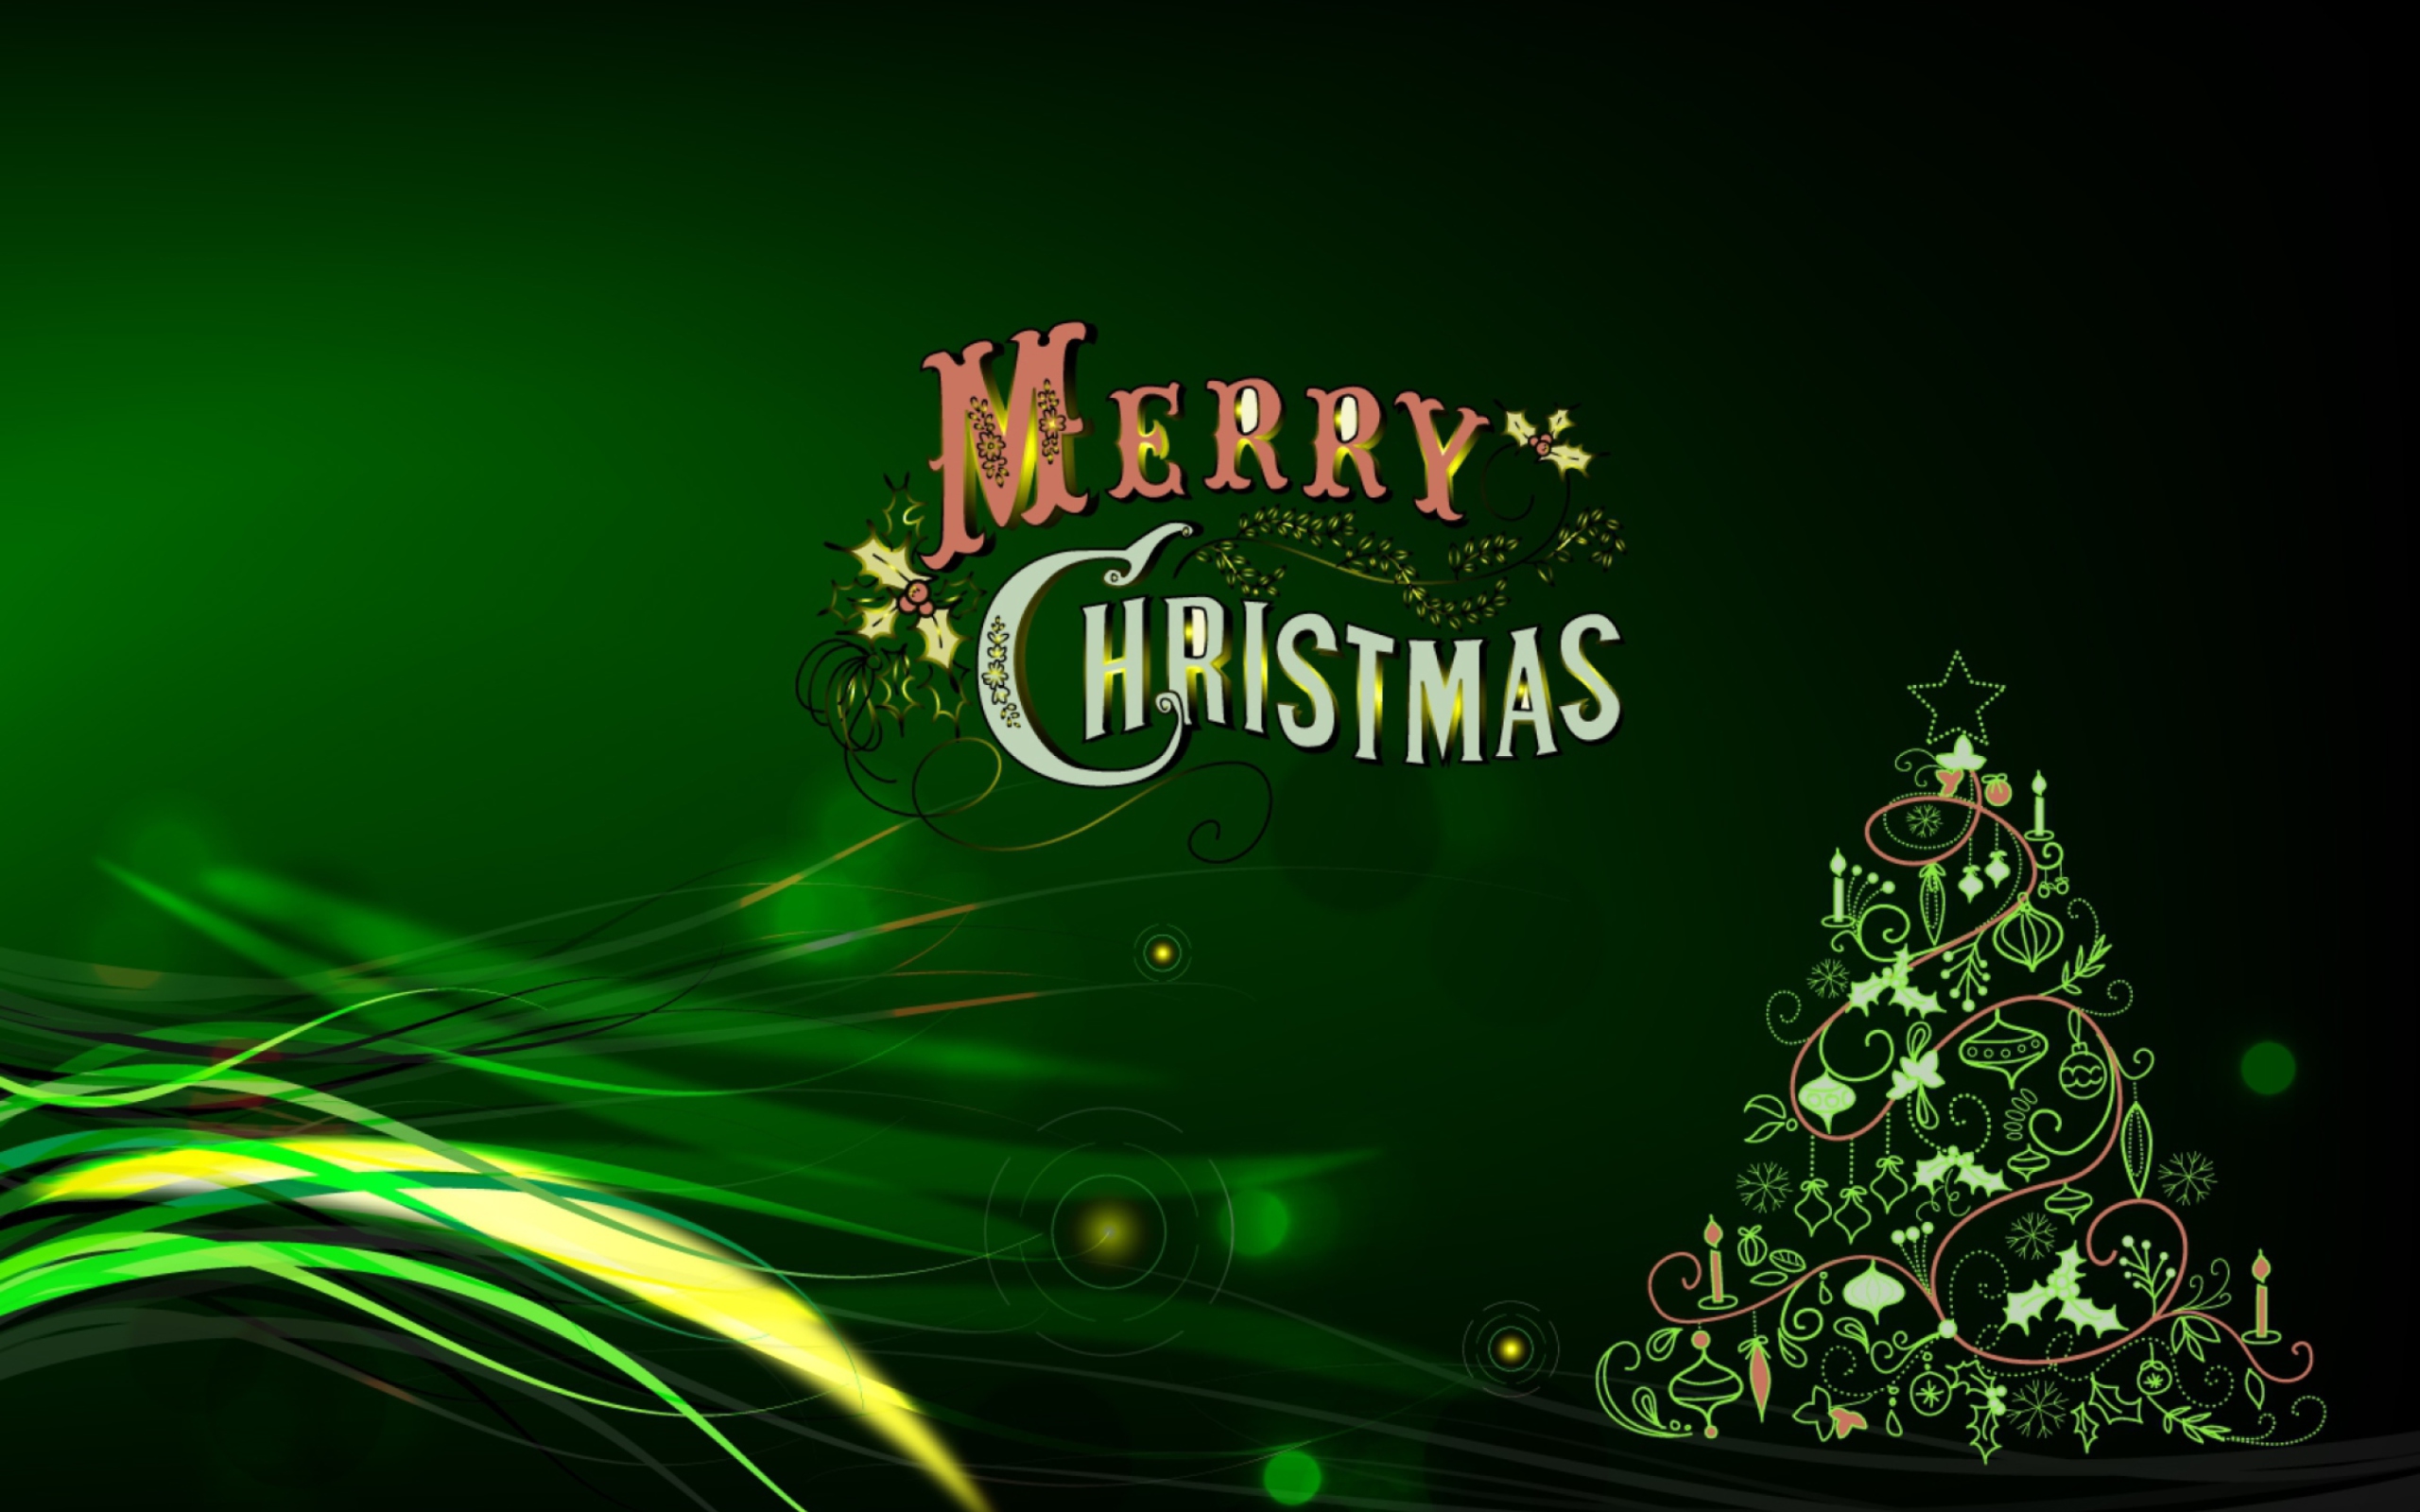 Das Green Merry Christmas Wallpaper 2560x1600